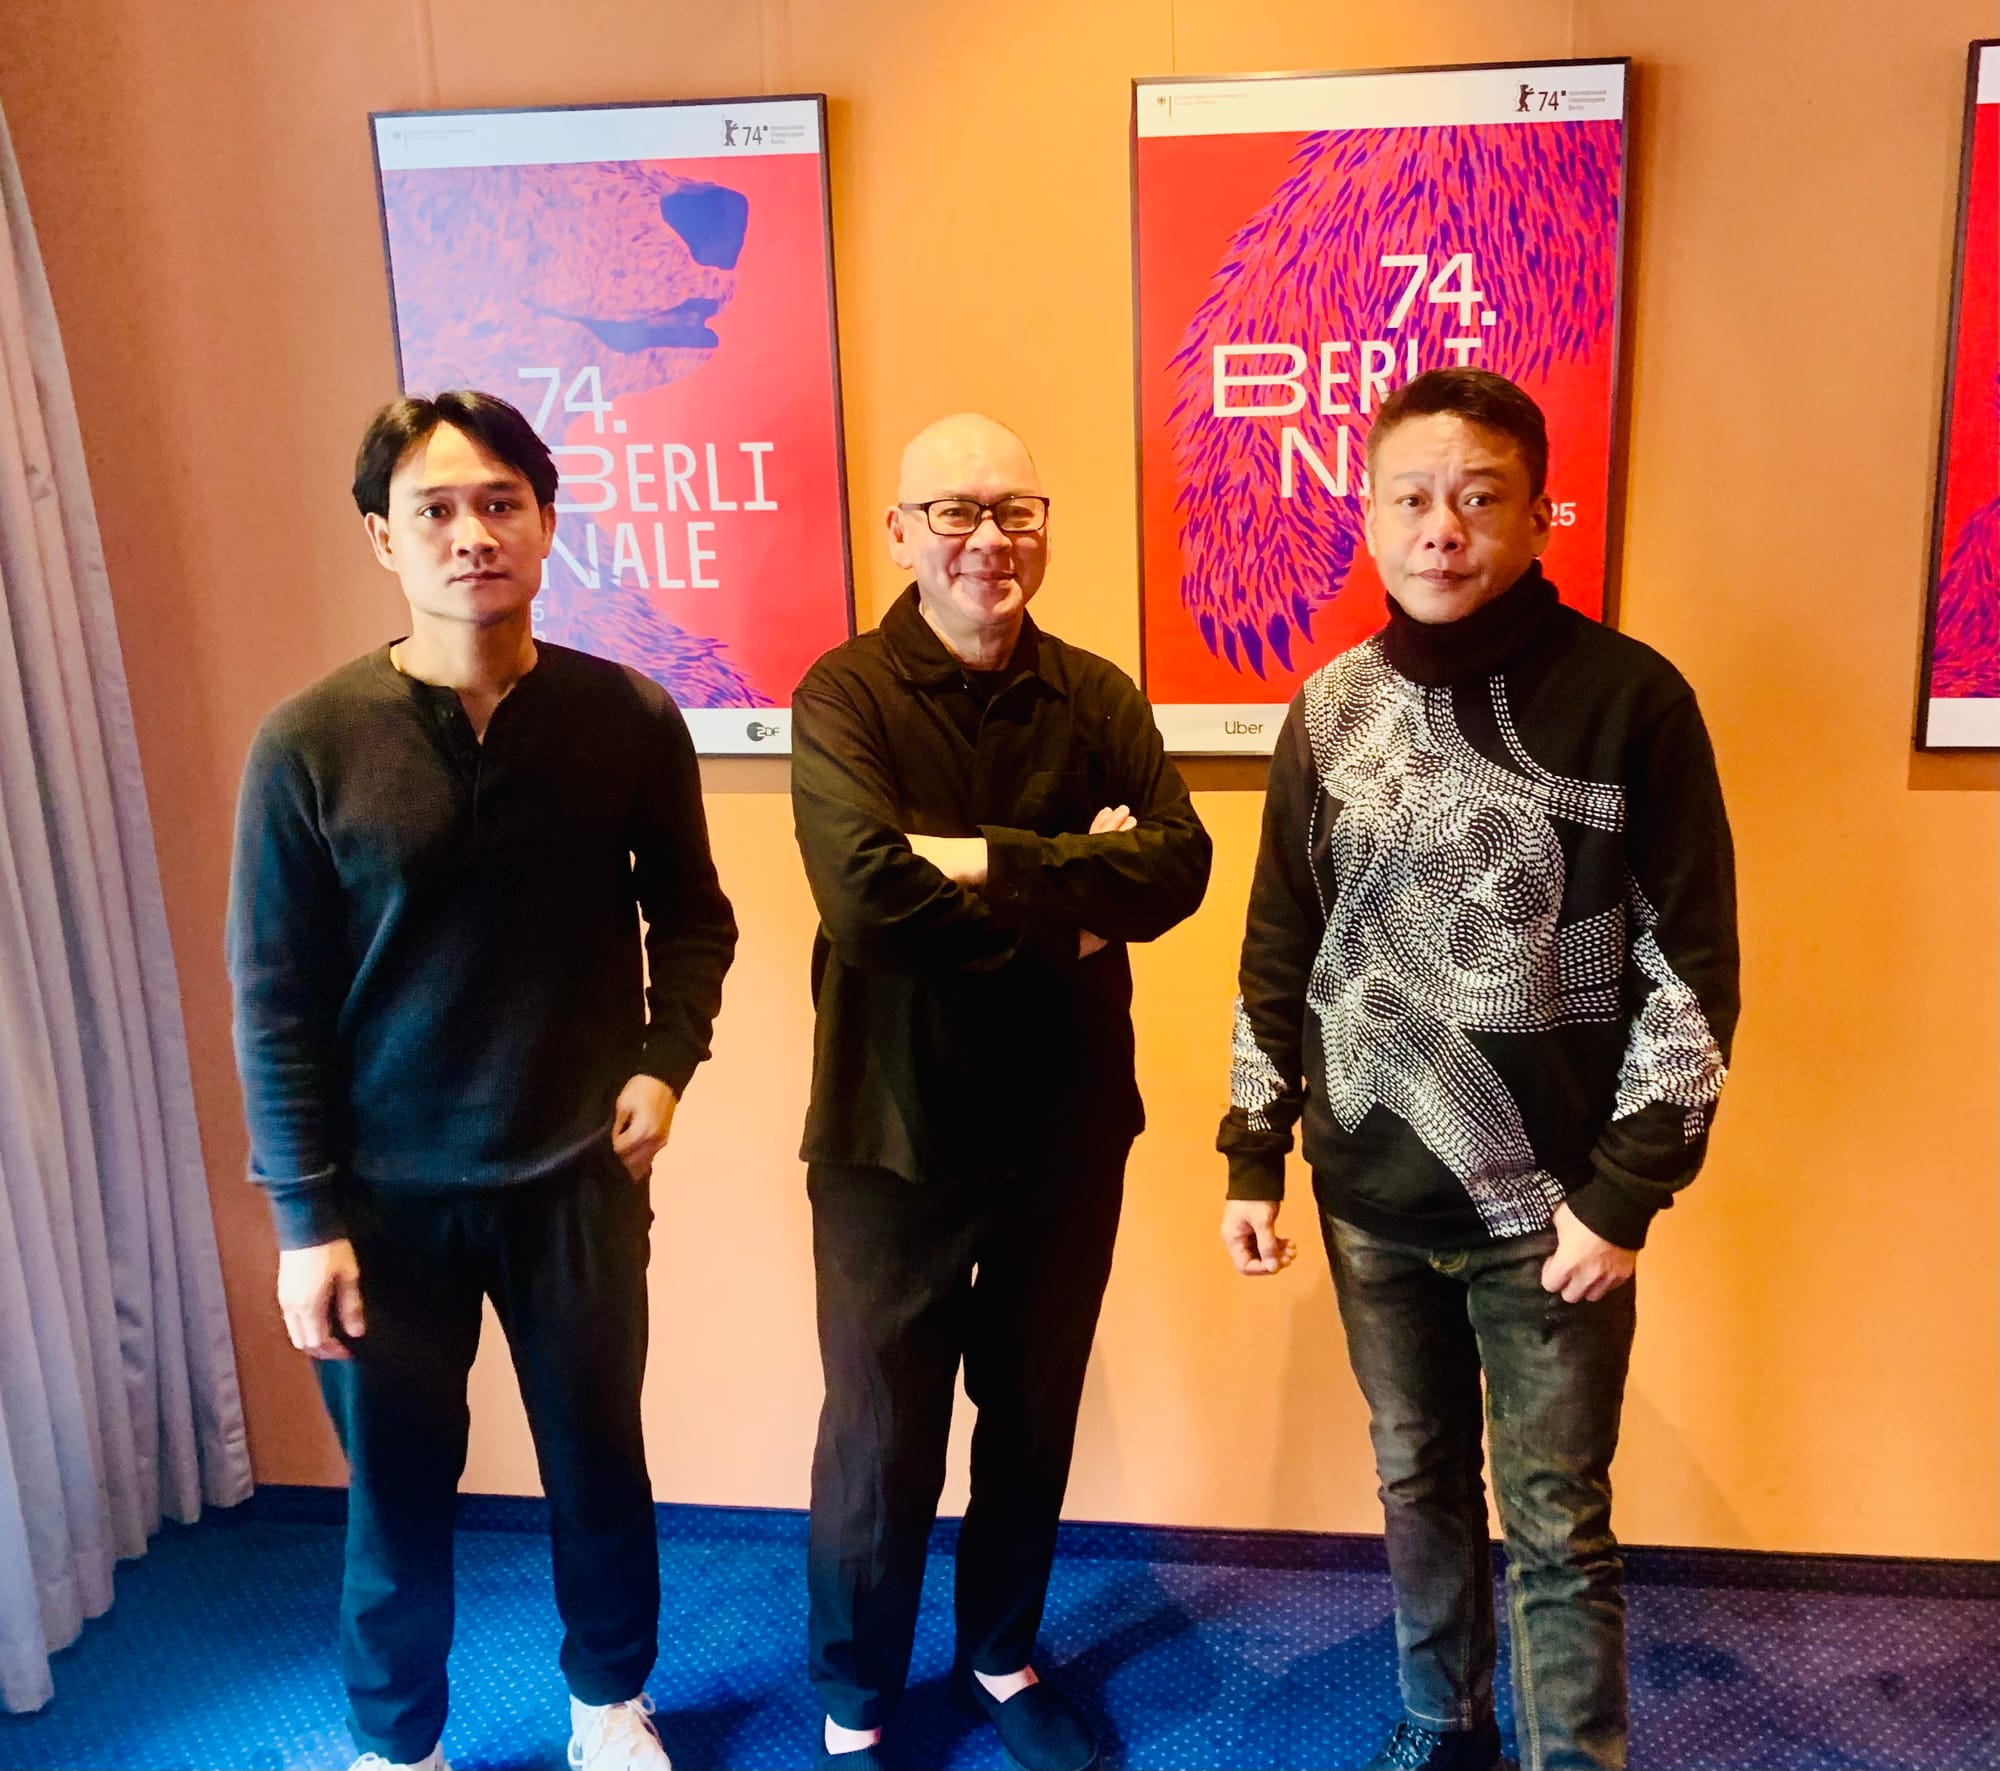 Berlinale 74 | Parla il maestro Tsai Ming-liang: “Camminare è un atto di ribellione”